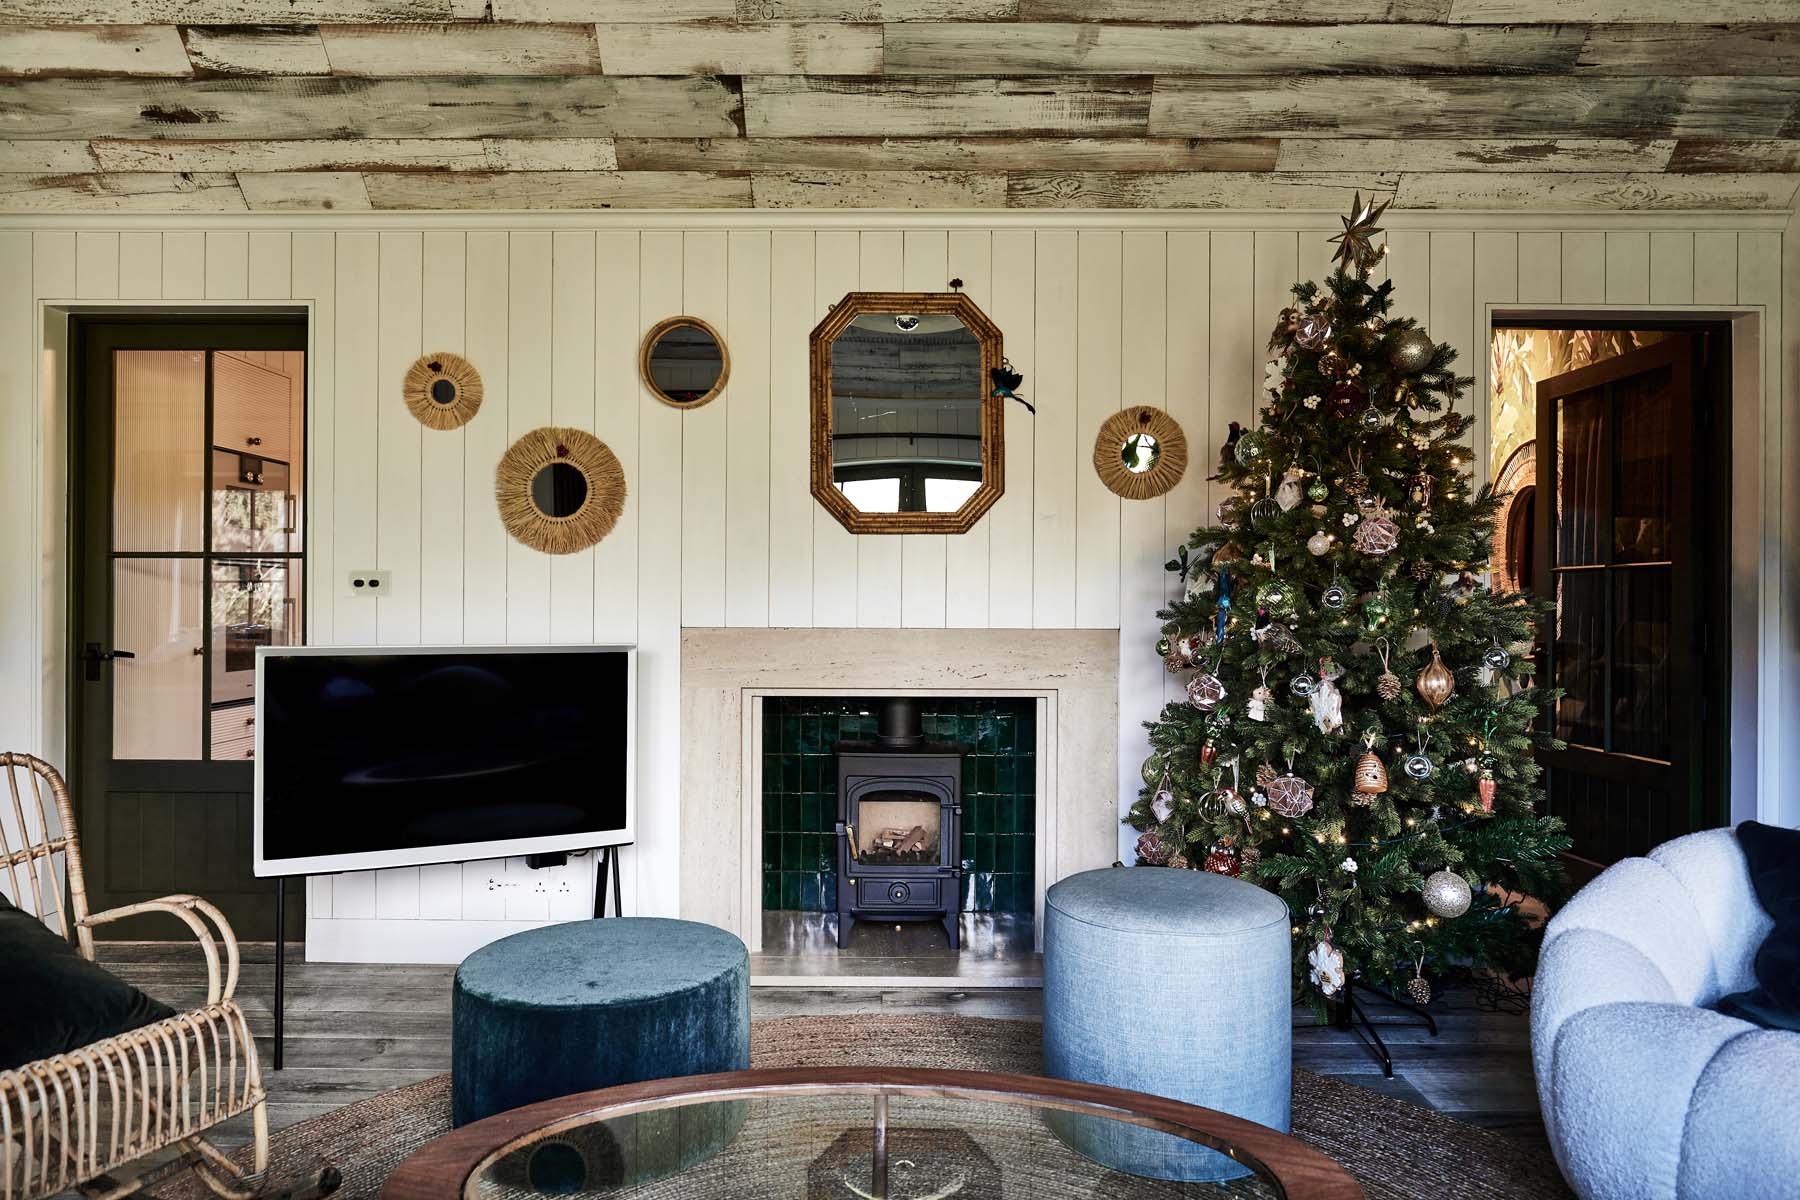 Living area with log burner, tv and Christmas tree